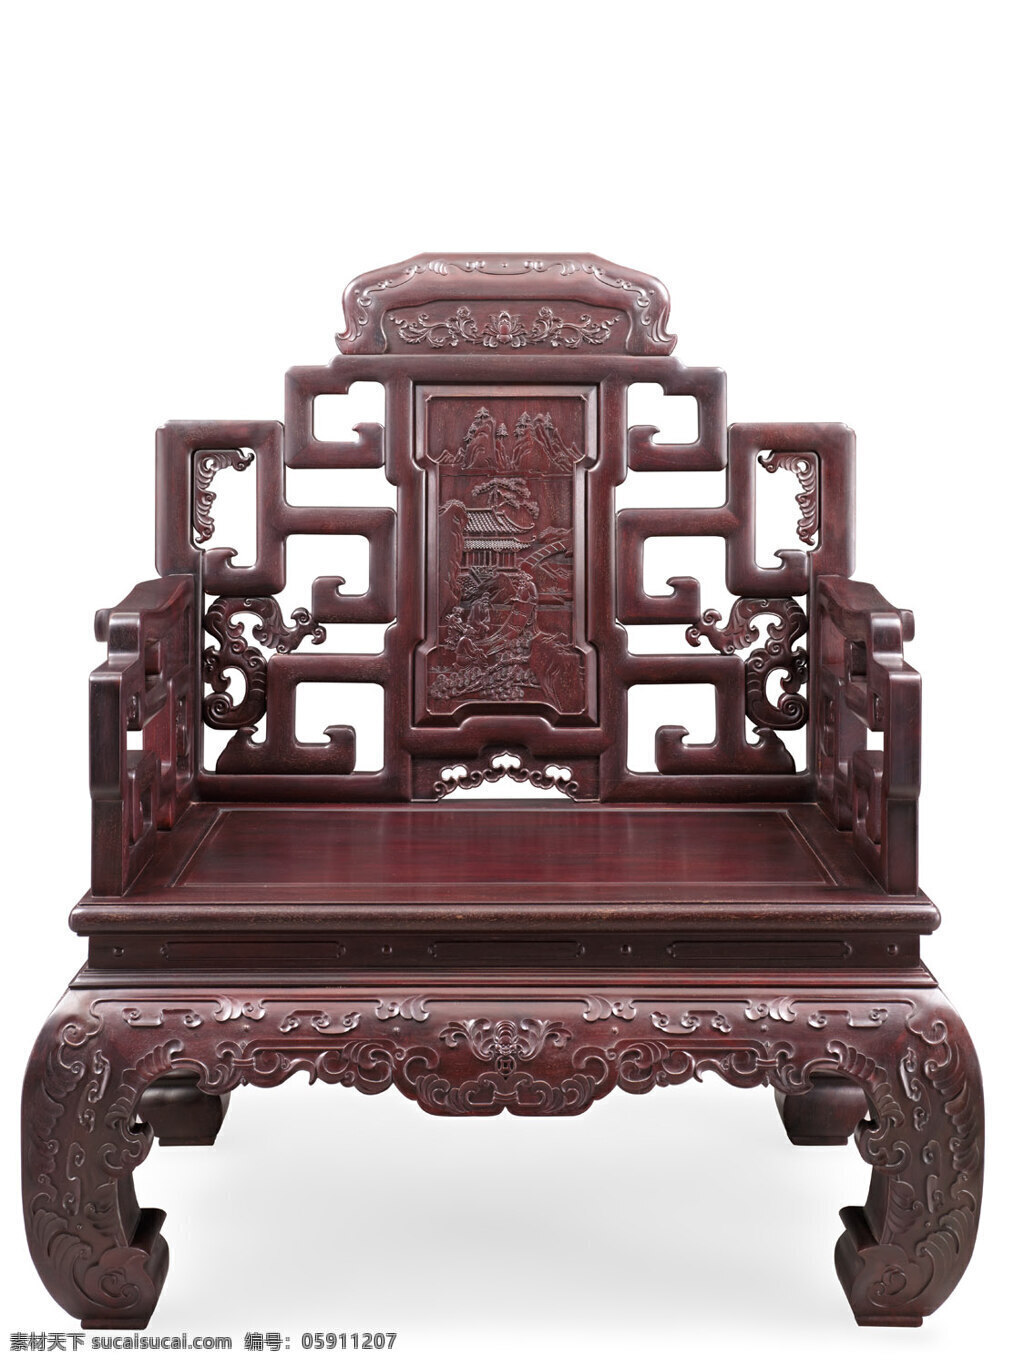 古典家具 单人 沙发 单人沙发 家具 红木 仿古家具 文化艺术 传统文化